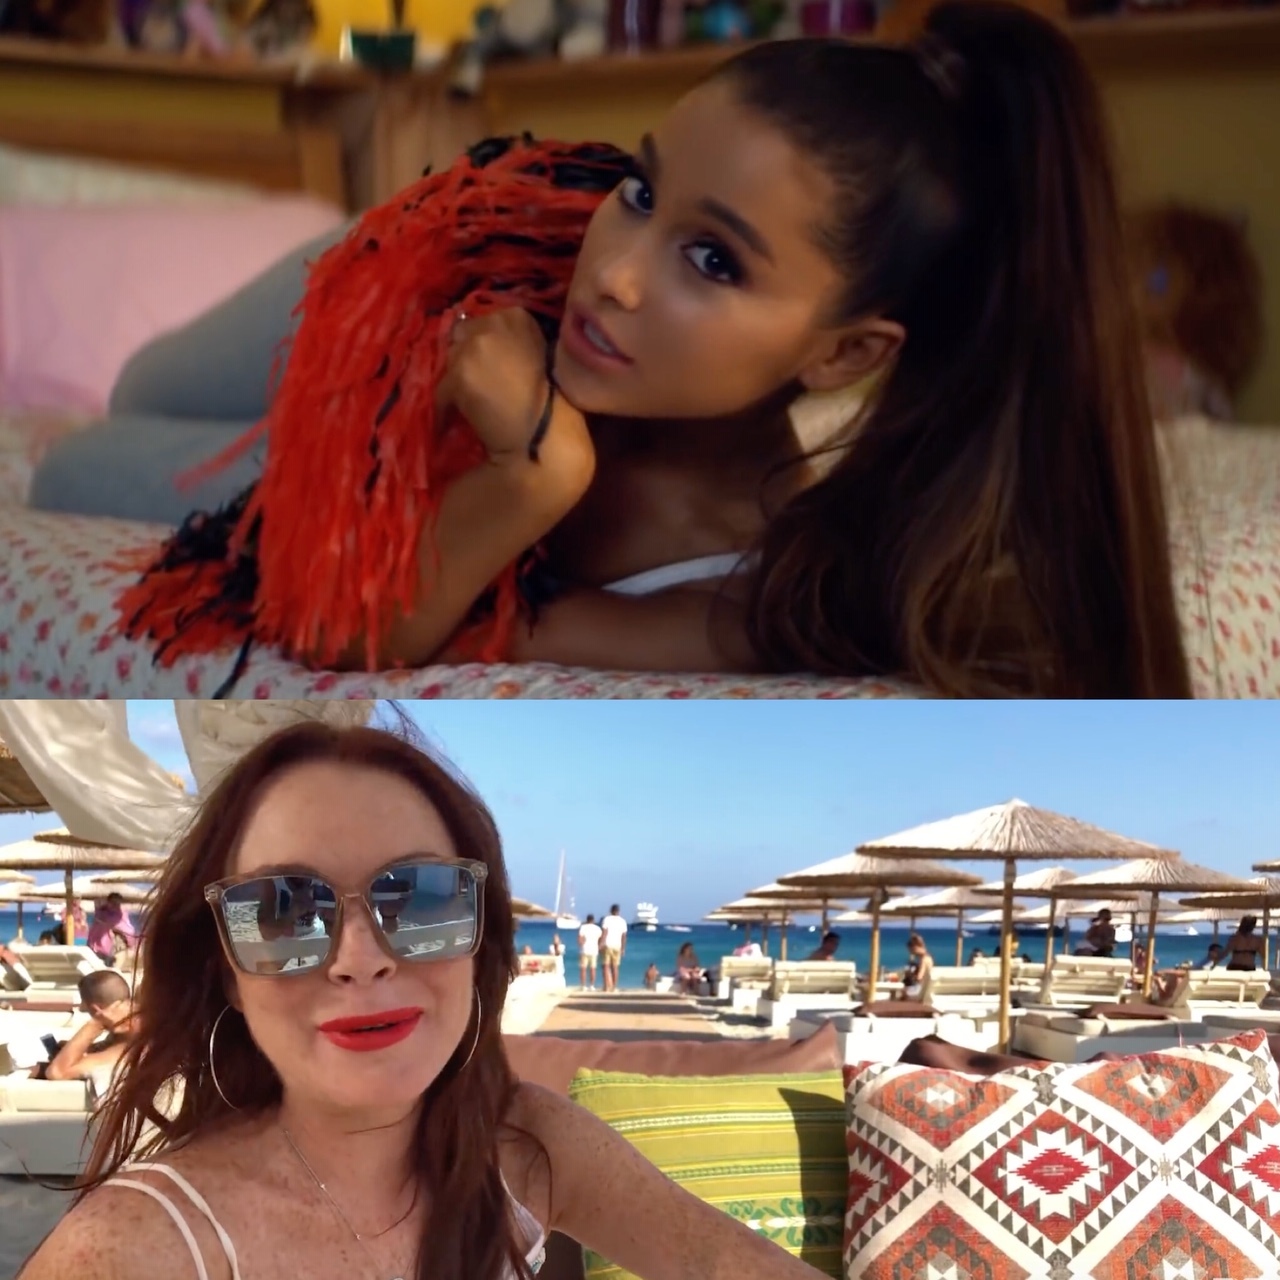 El Dardo De Lindsay Lohan A Ariana Grande Por El Videoclip